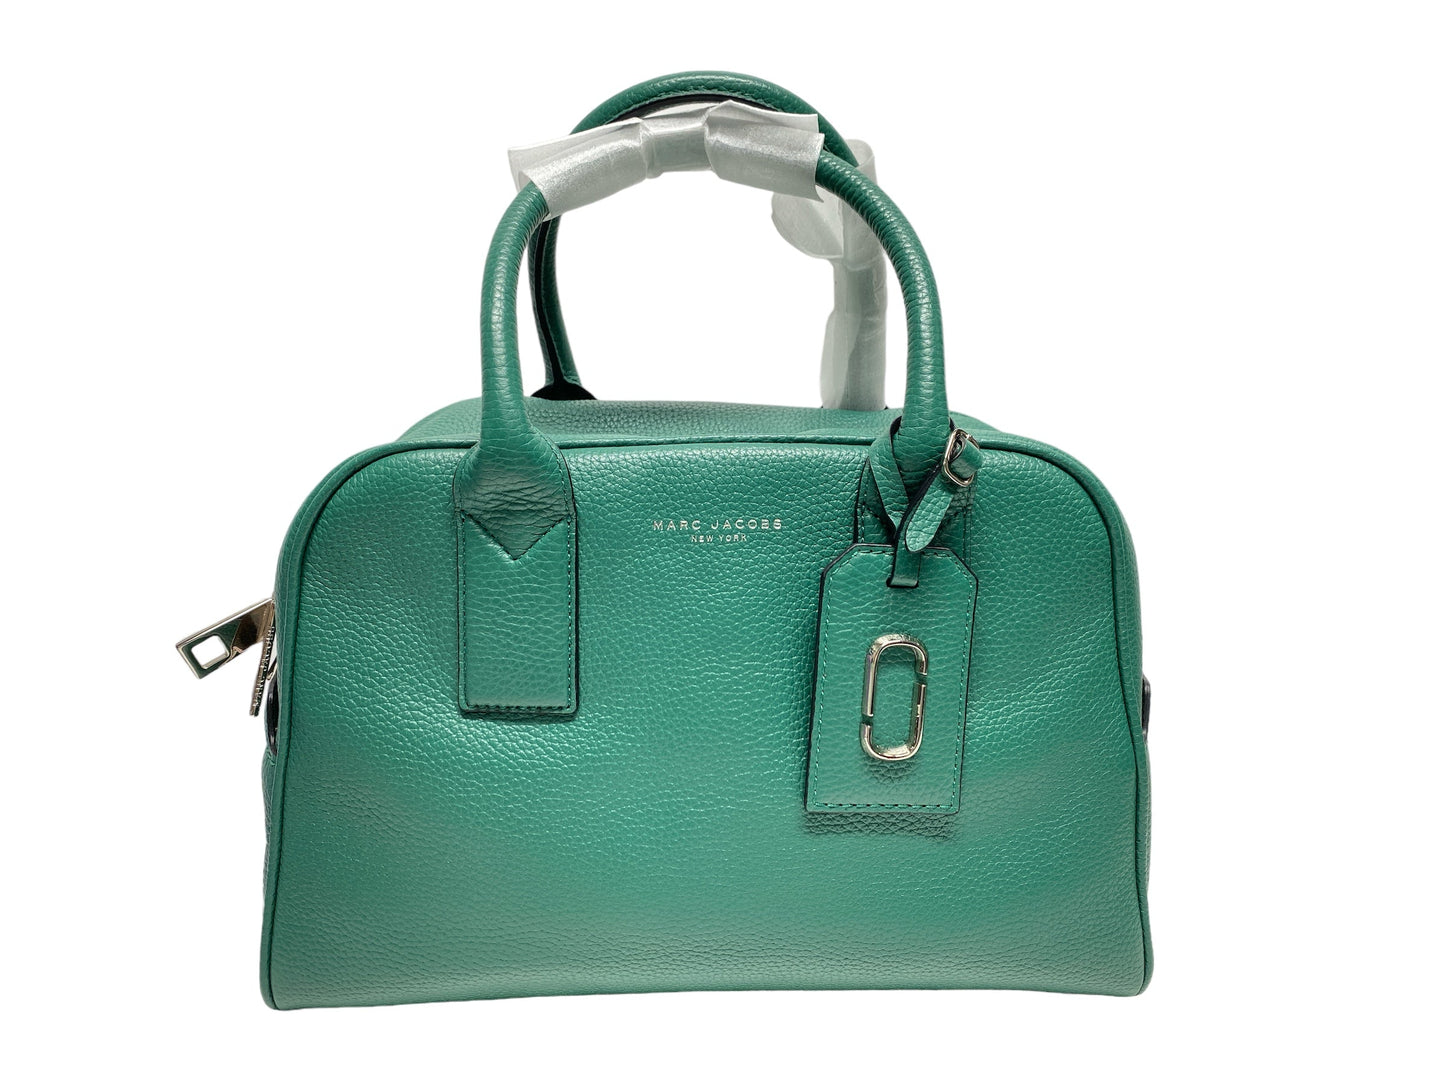 Handbag Designer Marc Jacobs, Size Large